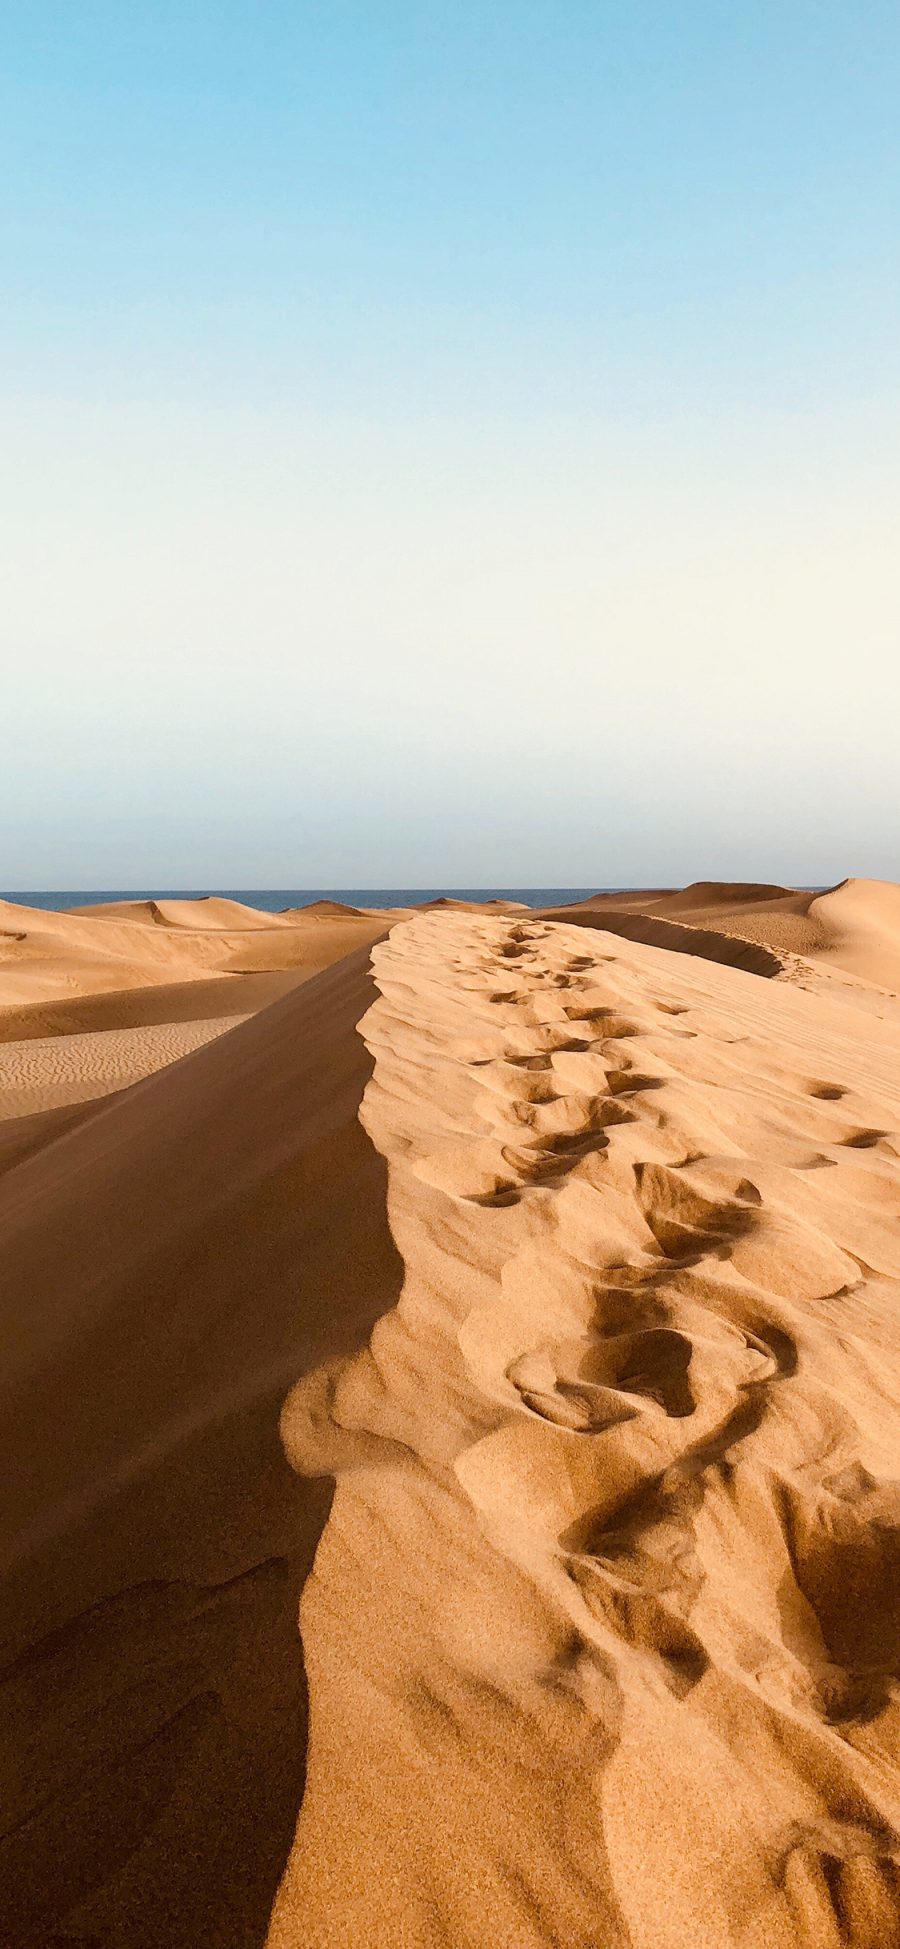 [2436×1125]沙漠 大自然 荒漠 苹果手机壁纸图片